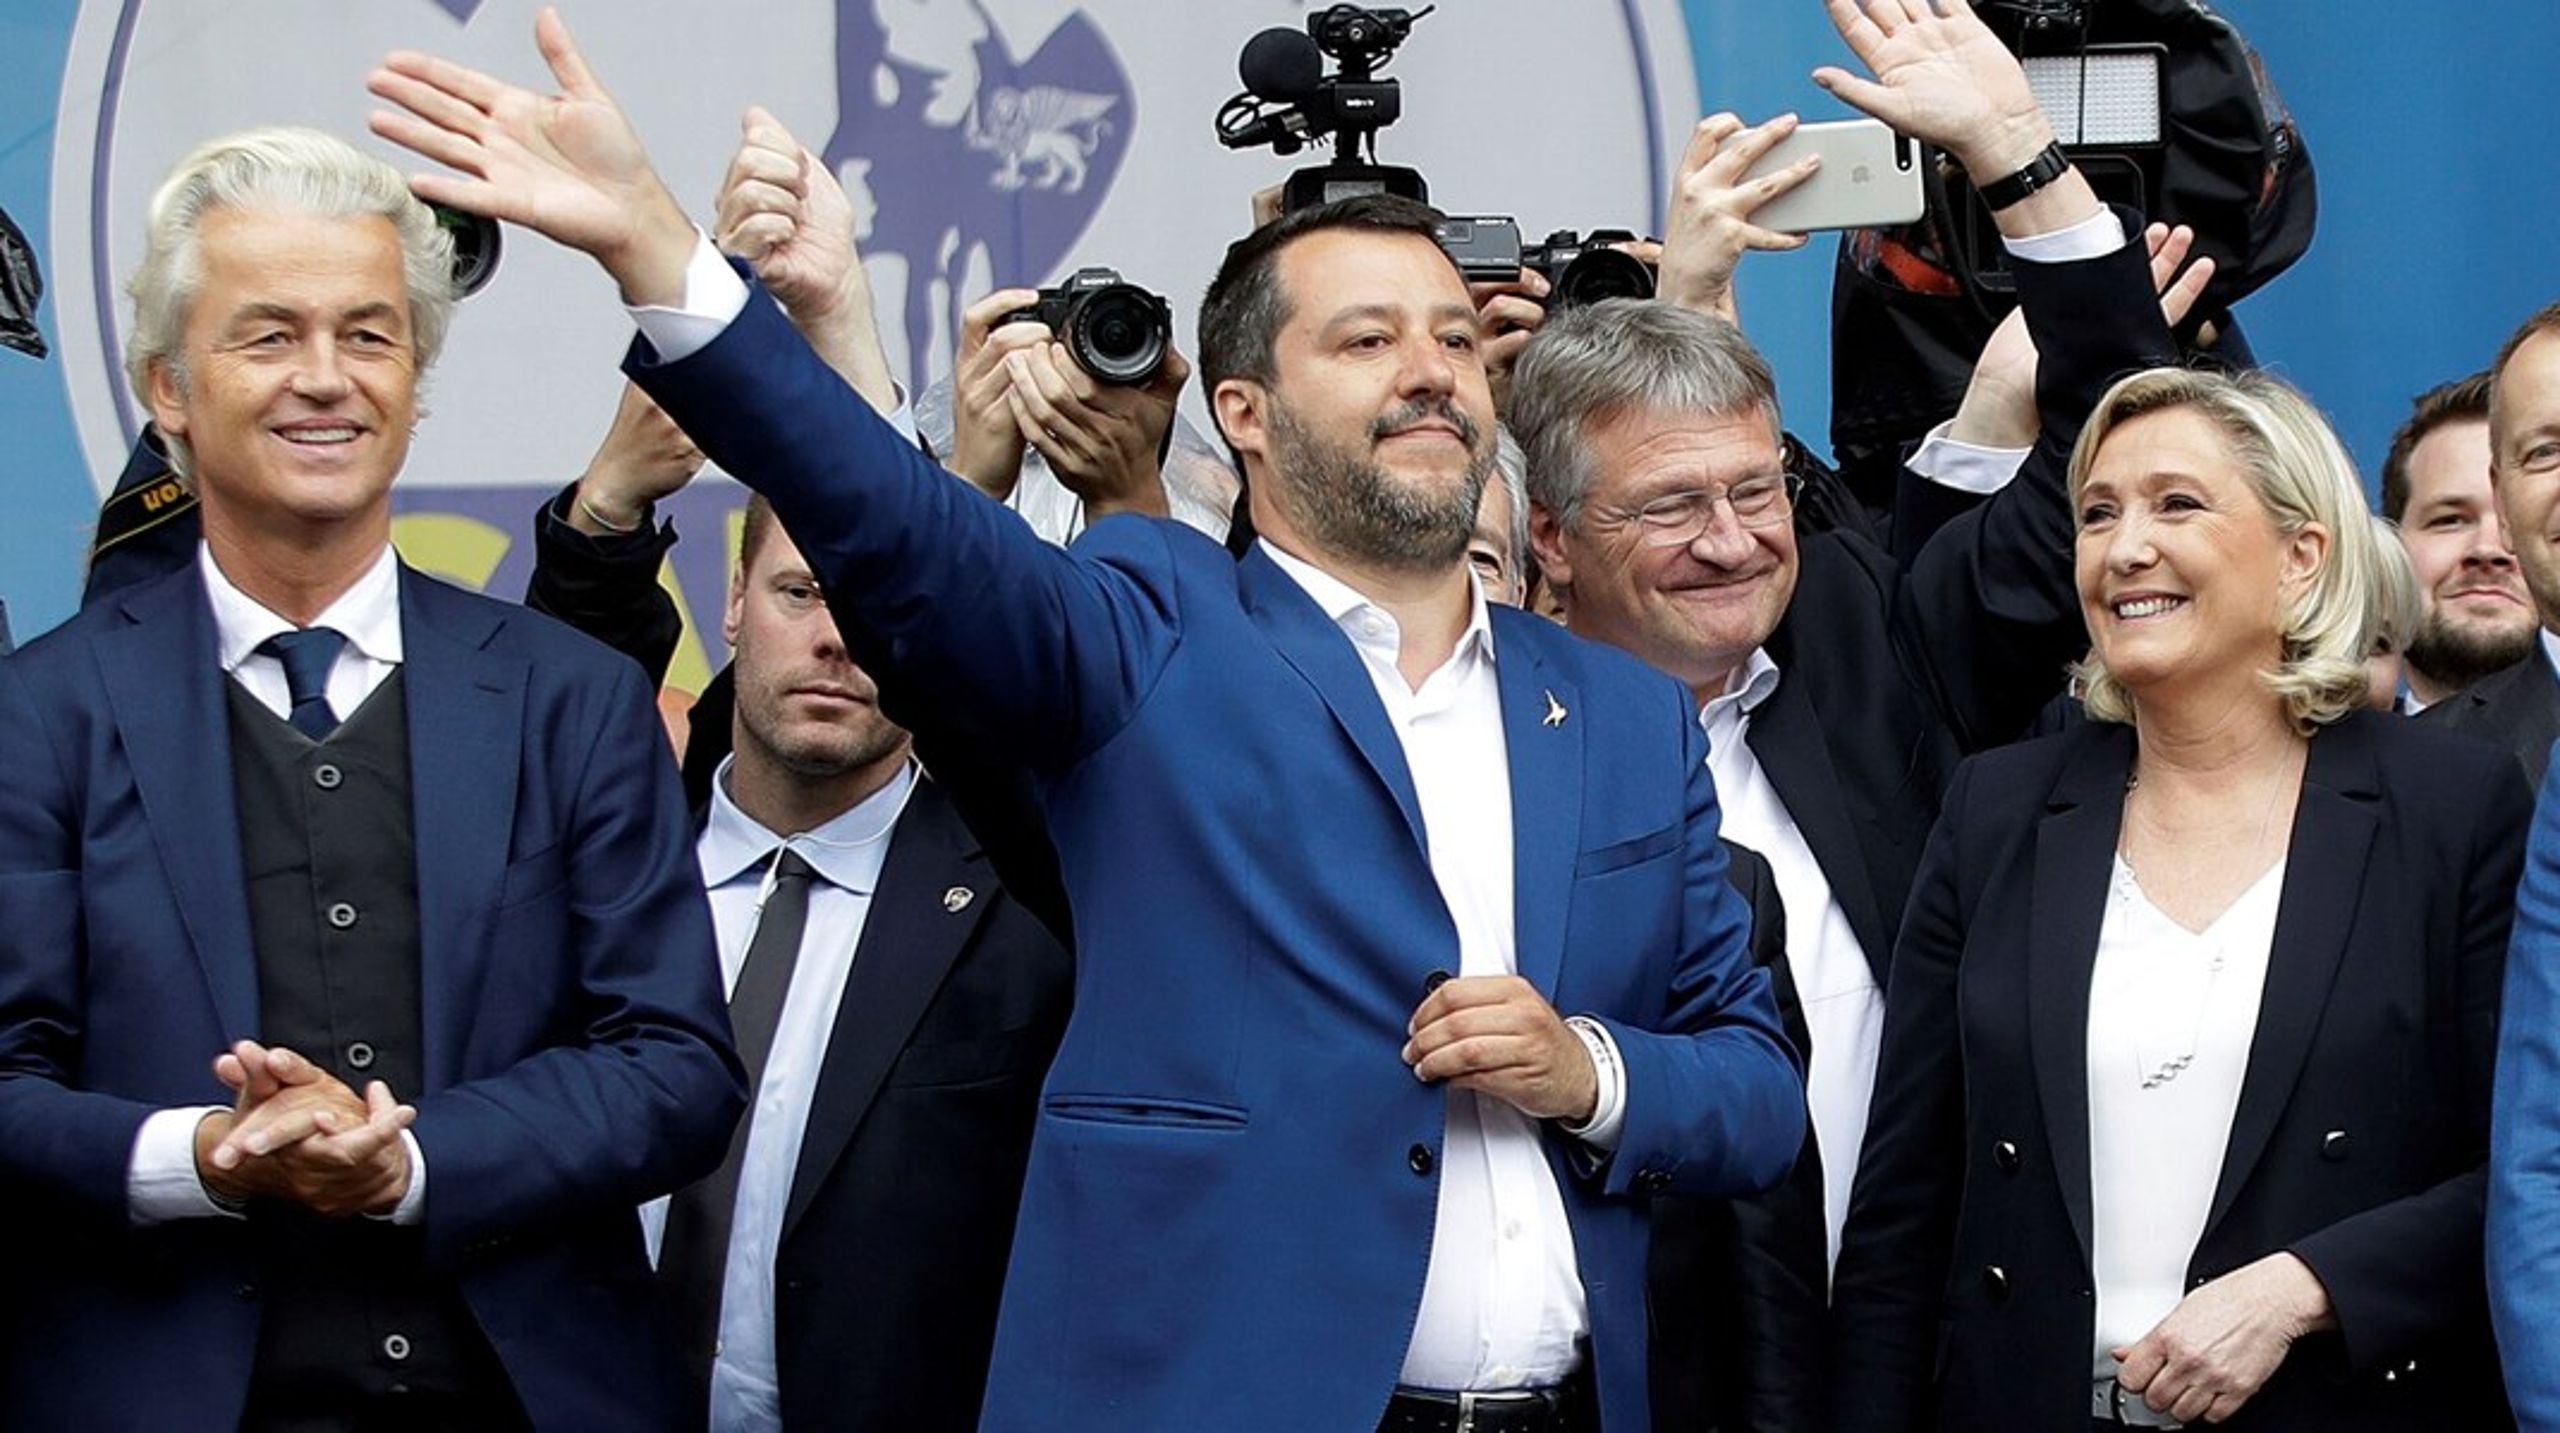 Ved sidste EU-valg i 2019 forsøgte lederen af italienske Lega, Matteo Salvini (i midten), at samle andre højrenationalistiske ledere som Hollands Geert Wilders og Frankrigs Marine Le Pen om en form for fælles kampagne. Dengang var Anders Vistisen fra DF også med, som man kan skimte i baggrunden yderst til højre.&nbsp;